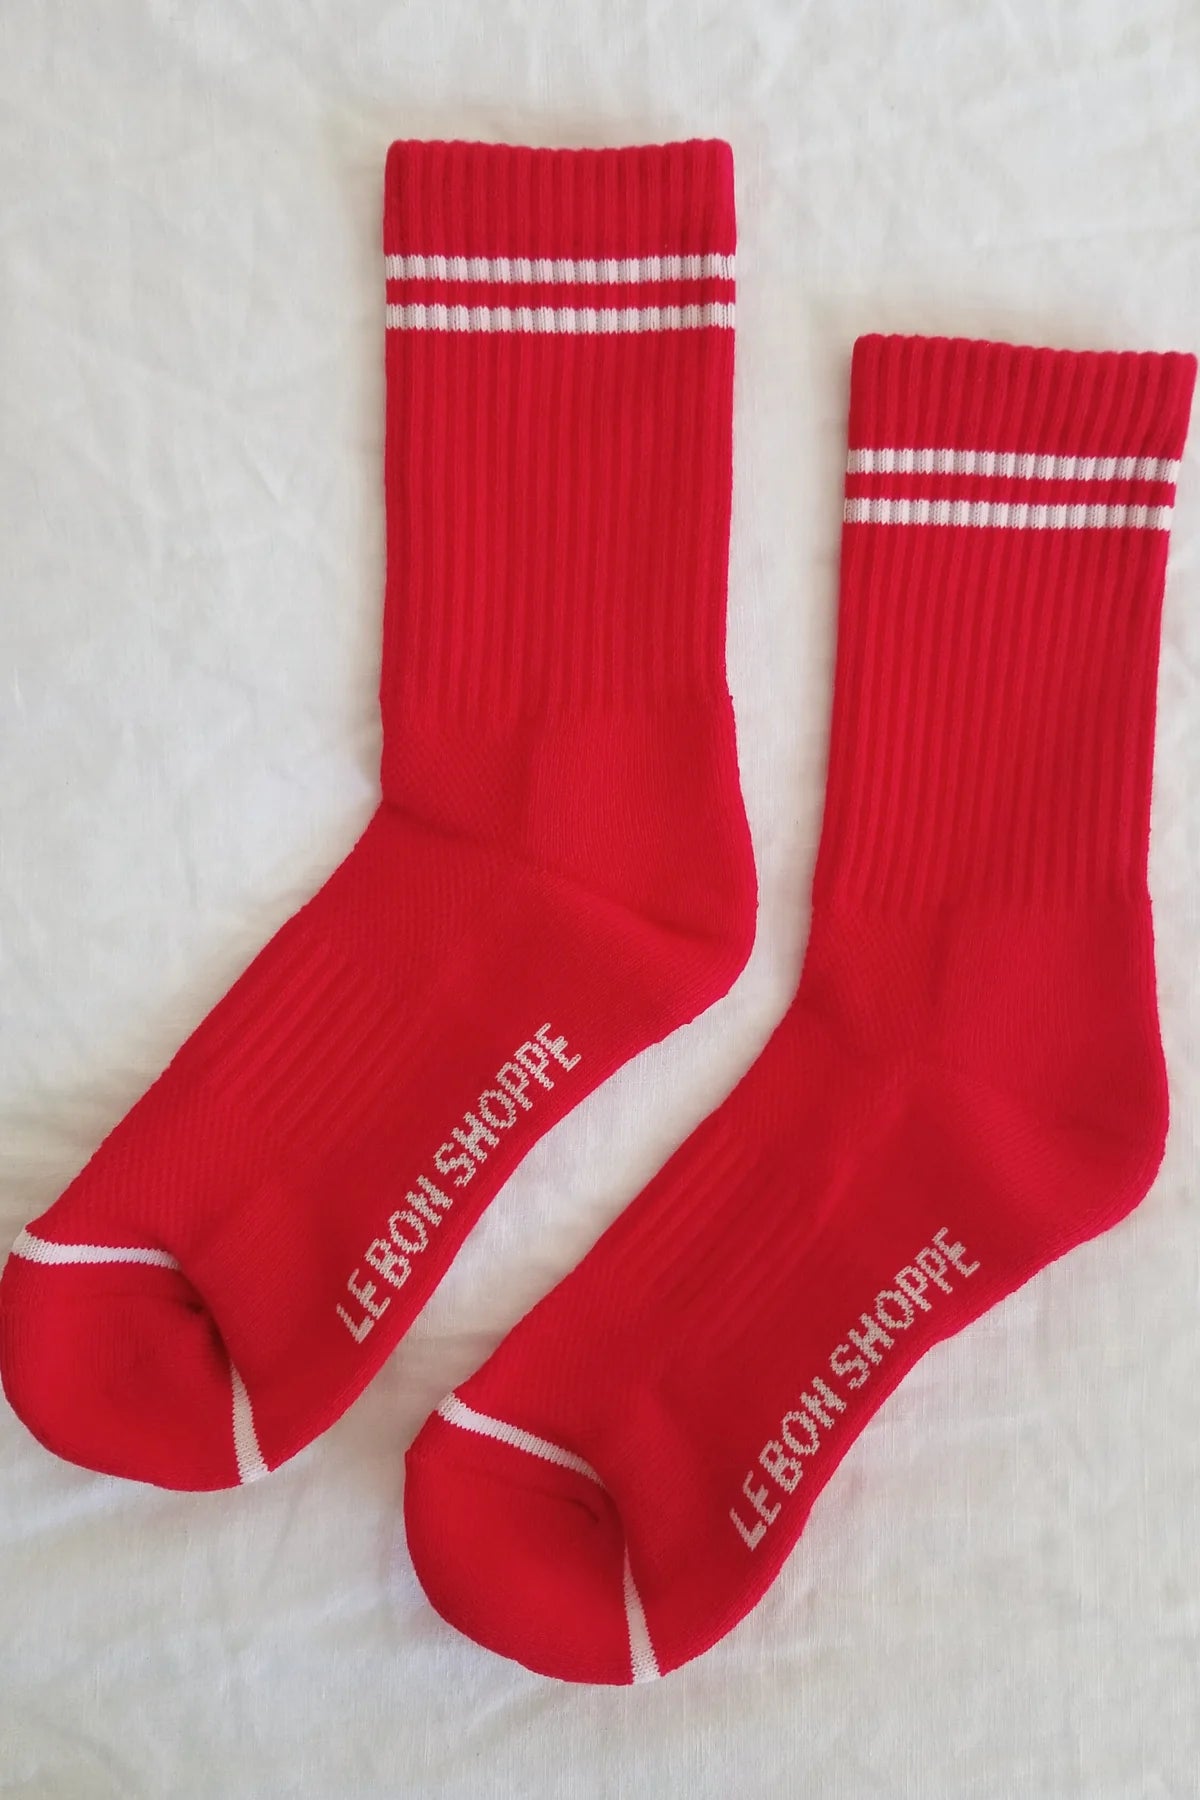 Le Bon Shoppe Boyfriend Sock in RED - OS